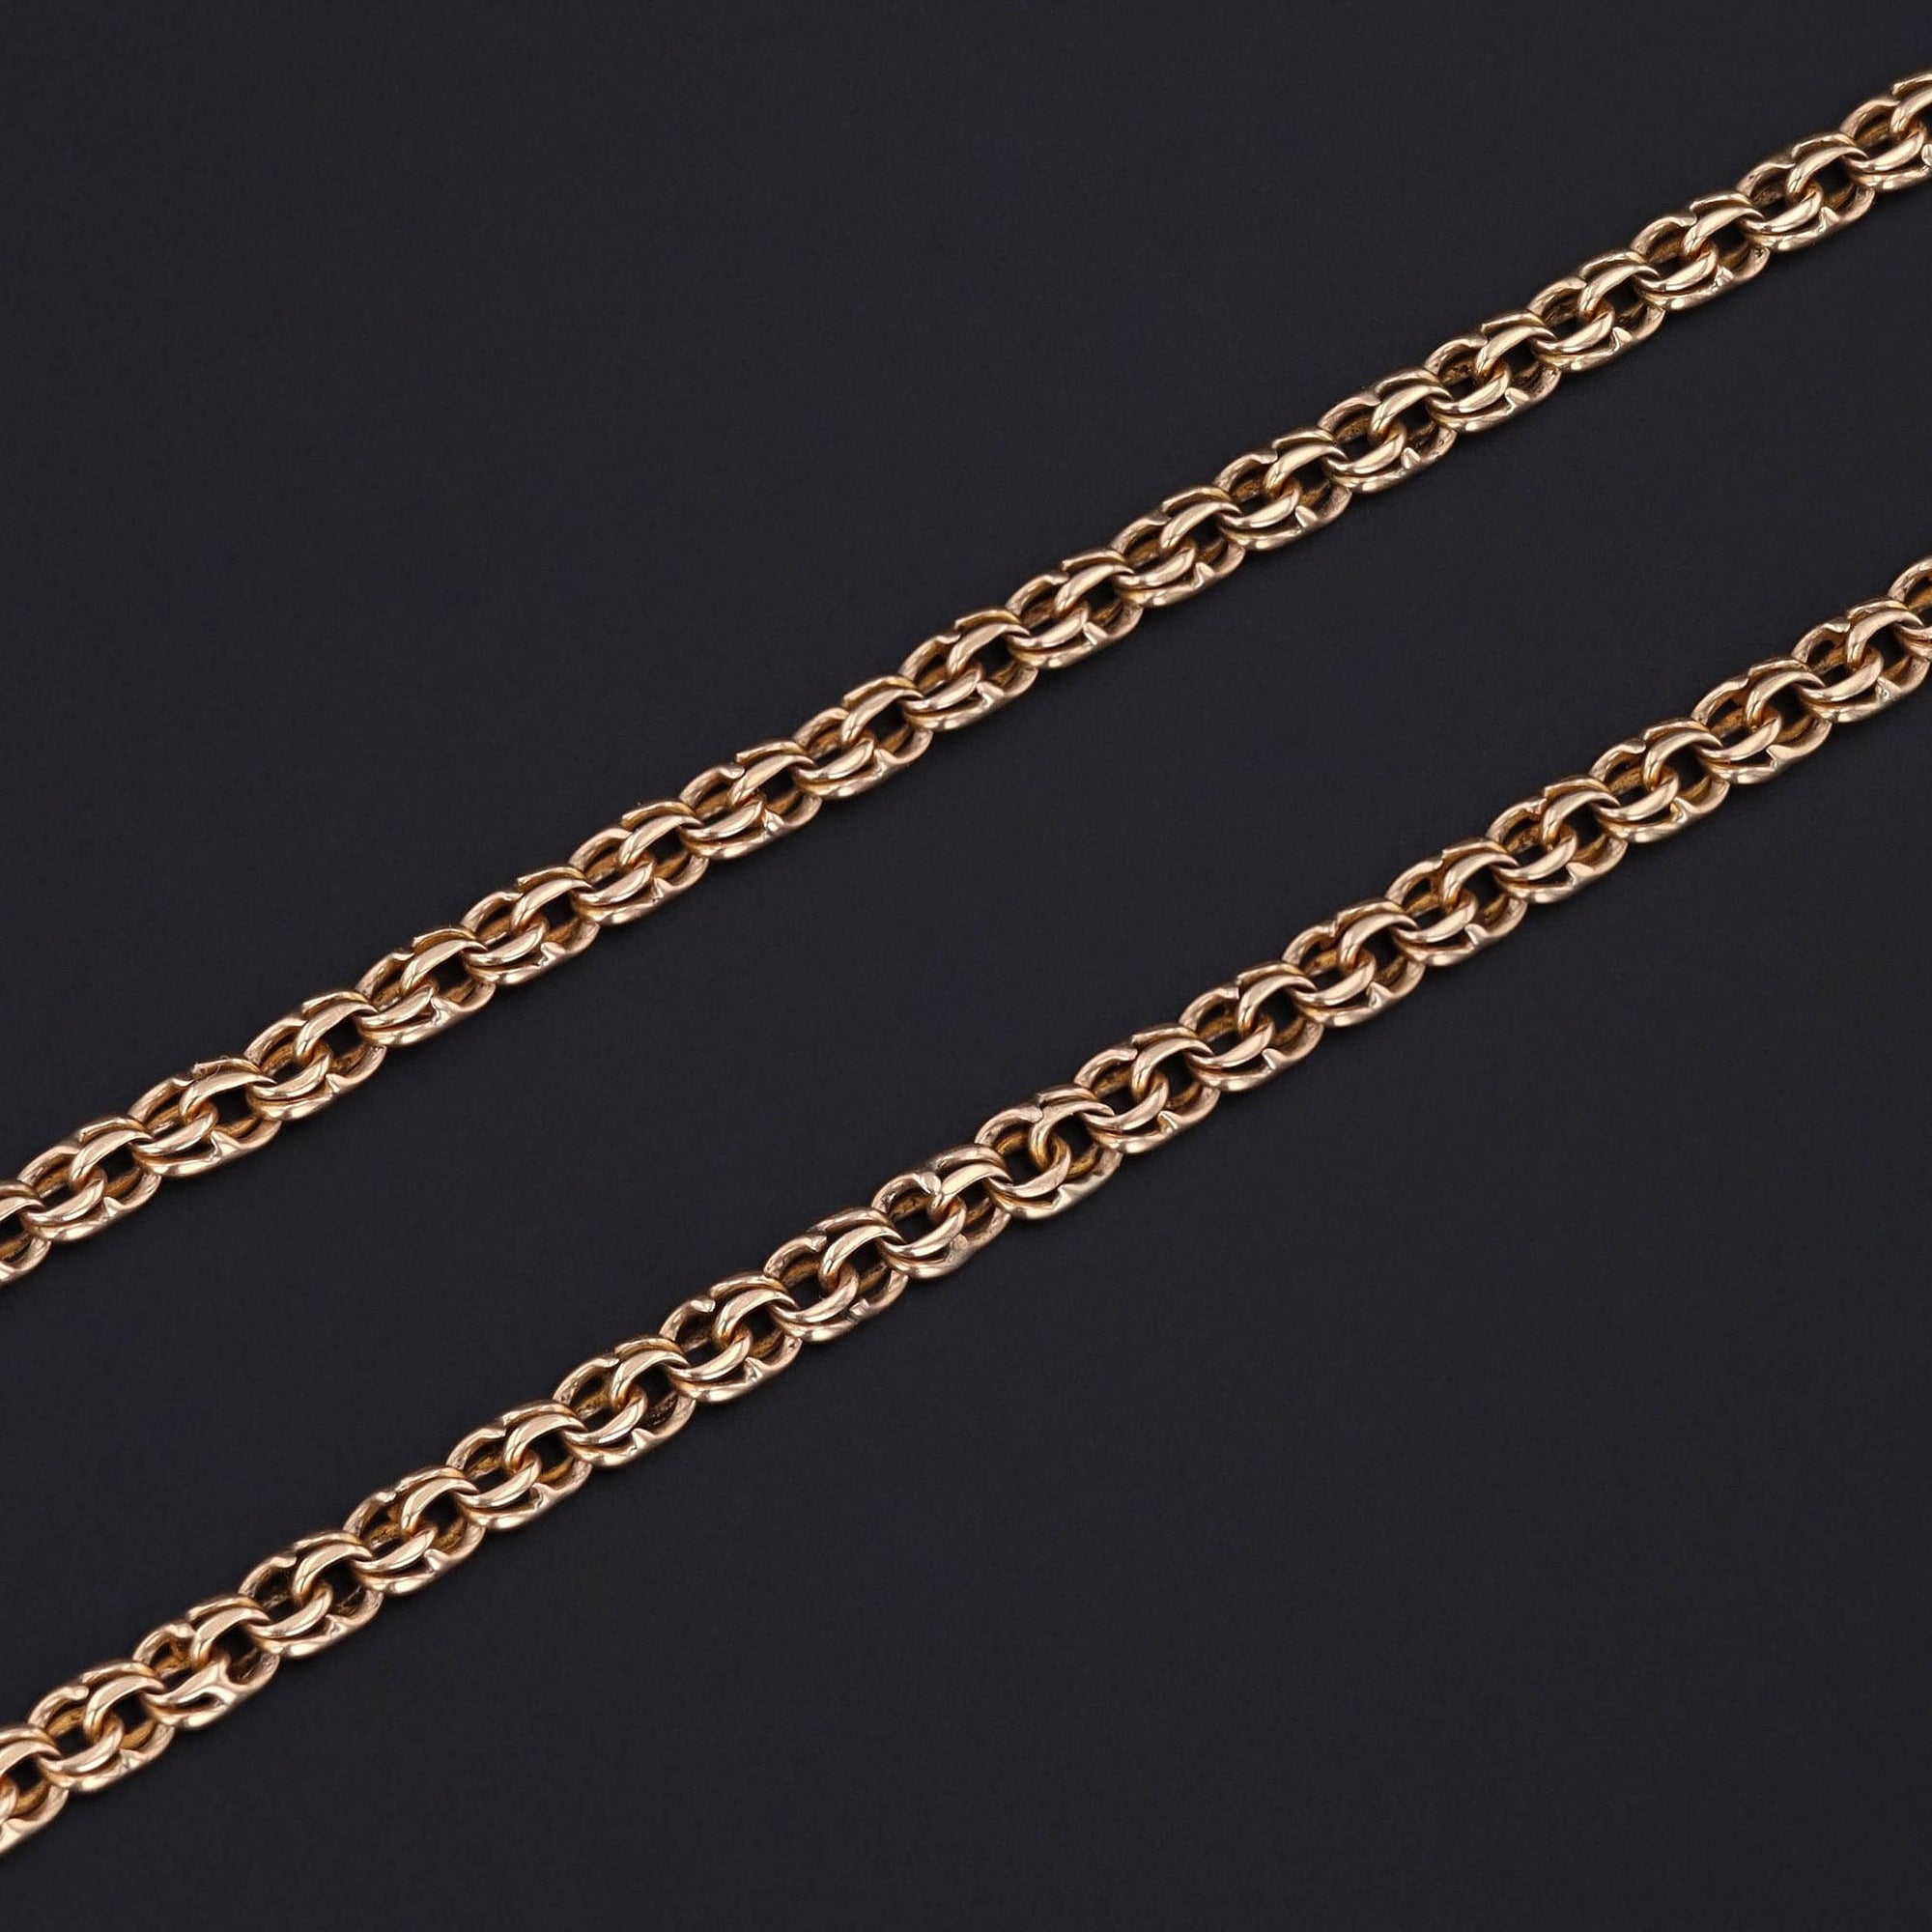 Antique Watch Chain | 14k Gold Chain 